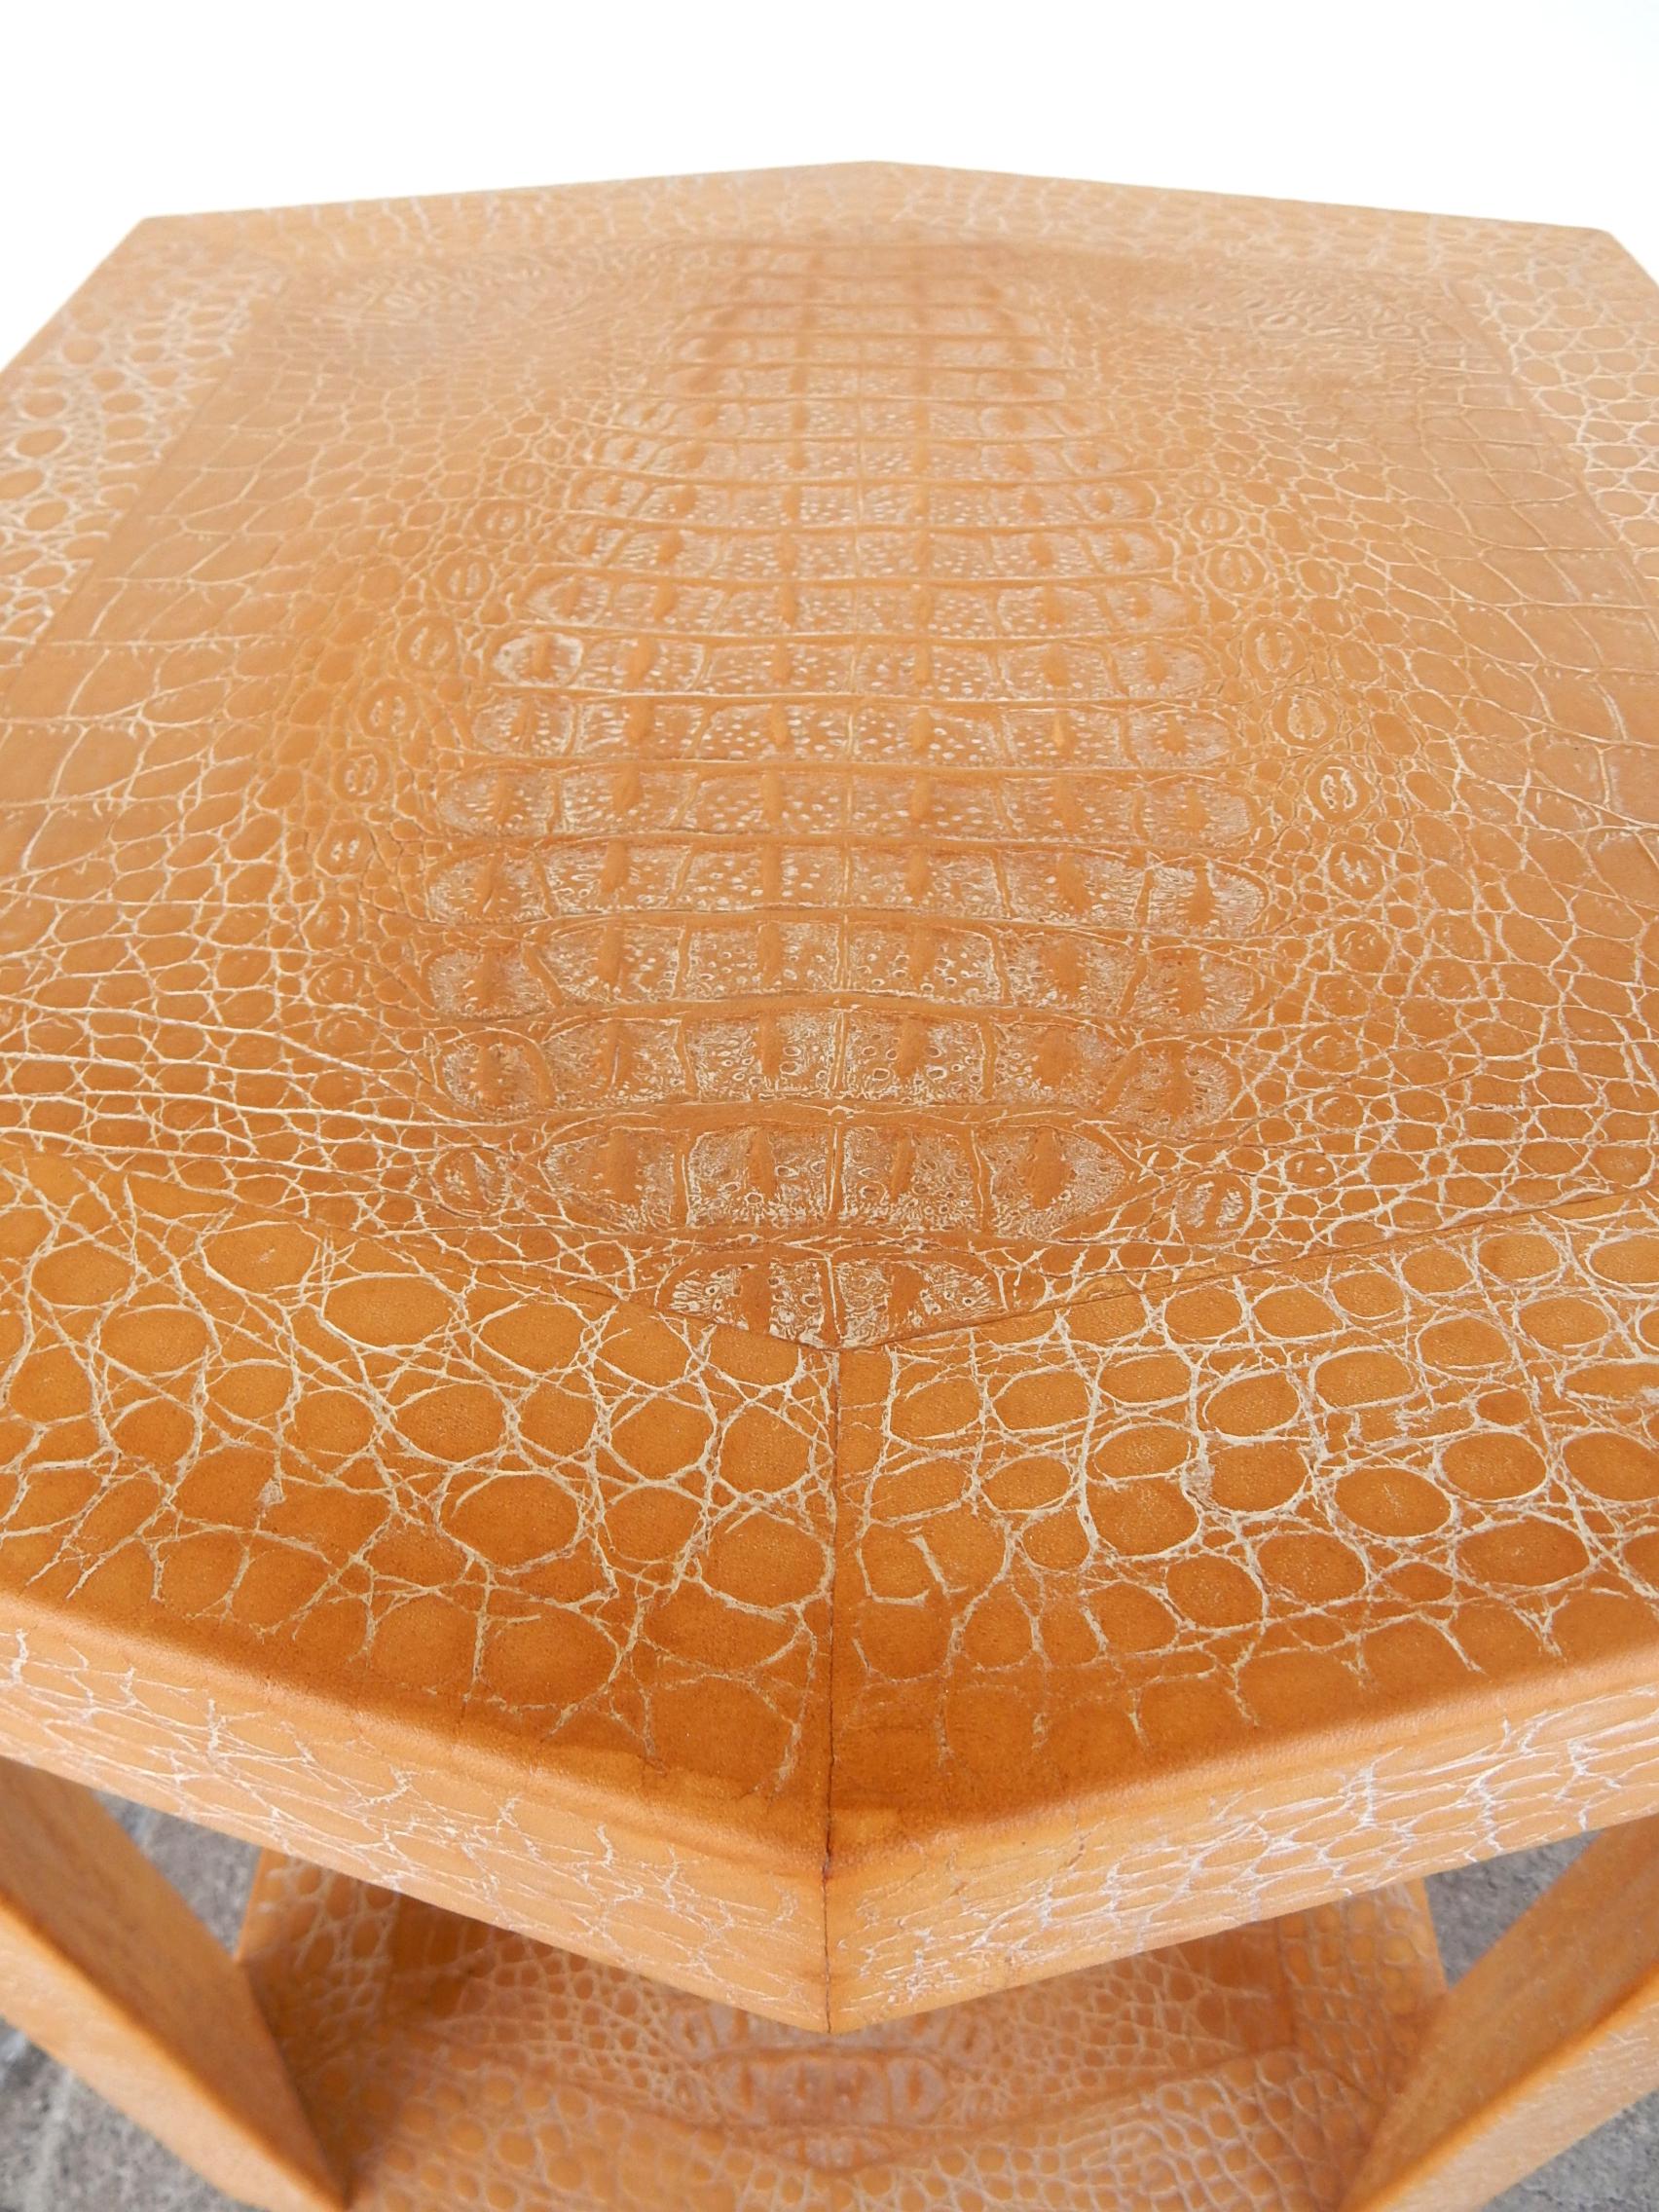 Post-Modern Signed Karl Springer Design Alligator Leather Clad Side Tables 